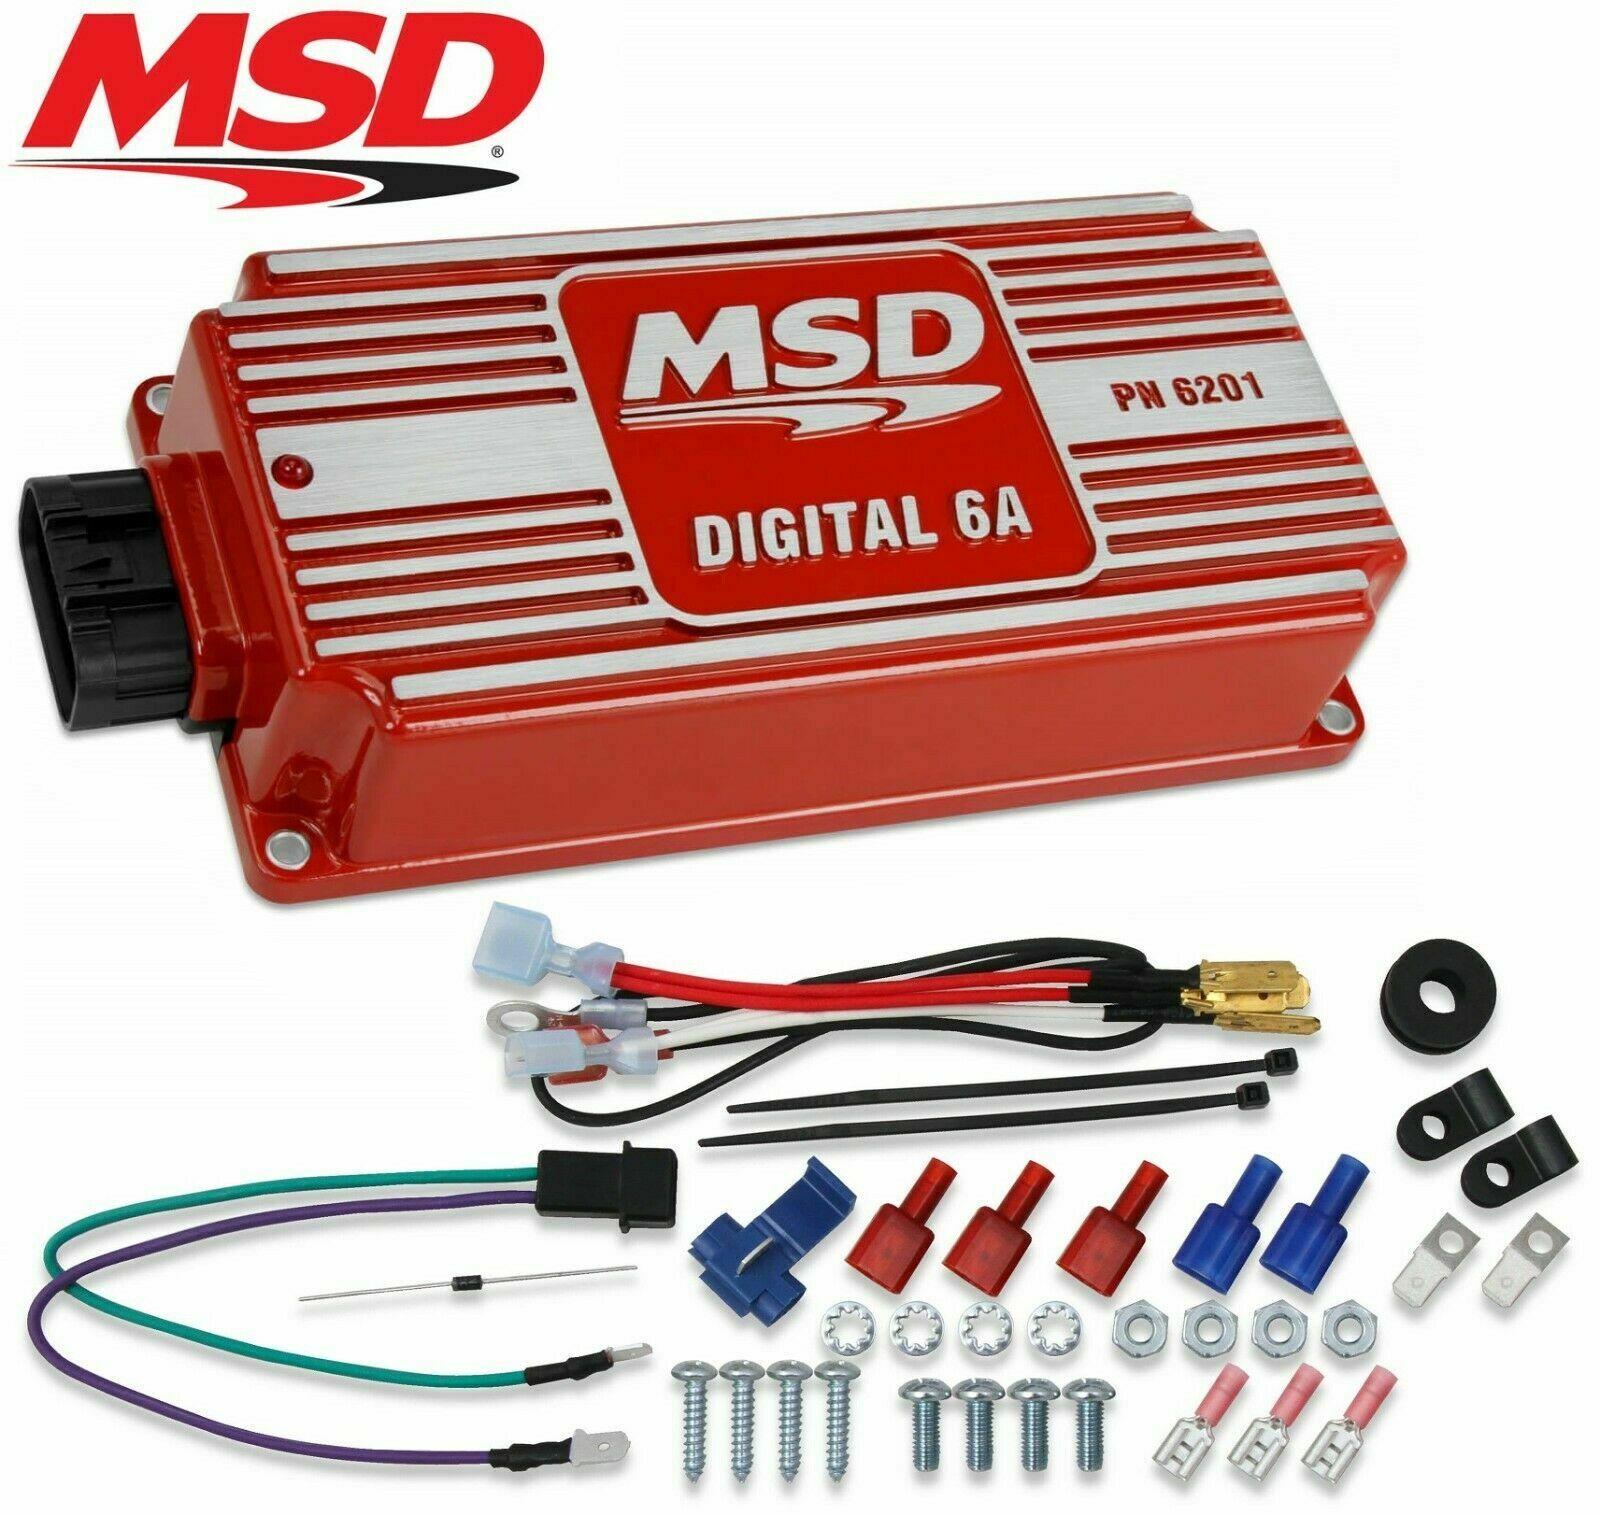 MSD デジタル6A PN6201 - 自動車